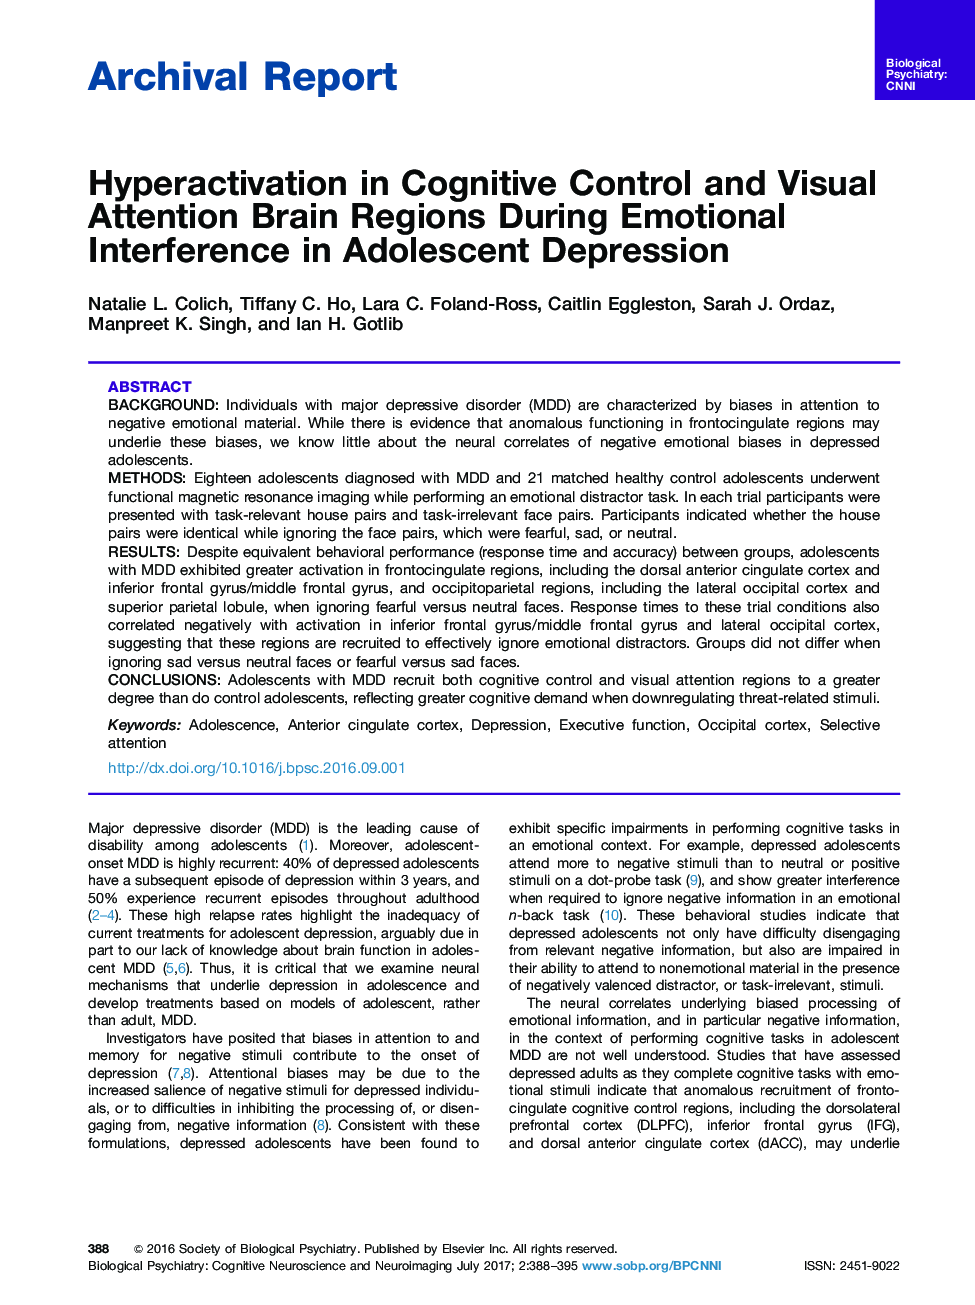 گزارش بایگانی فعال سازی در کنترل شناختی و توجه بصری مناطق مغزی در طول تداخل احساسی در افسردگی نوجوانان 